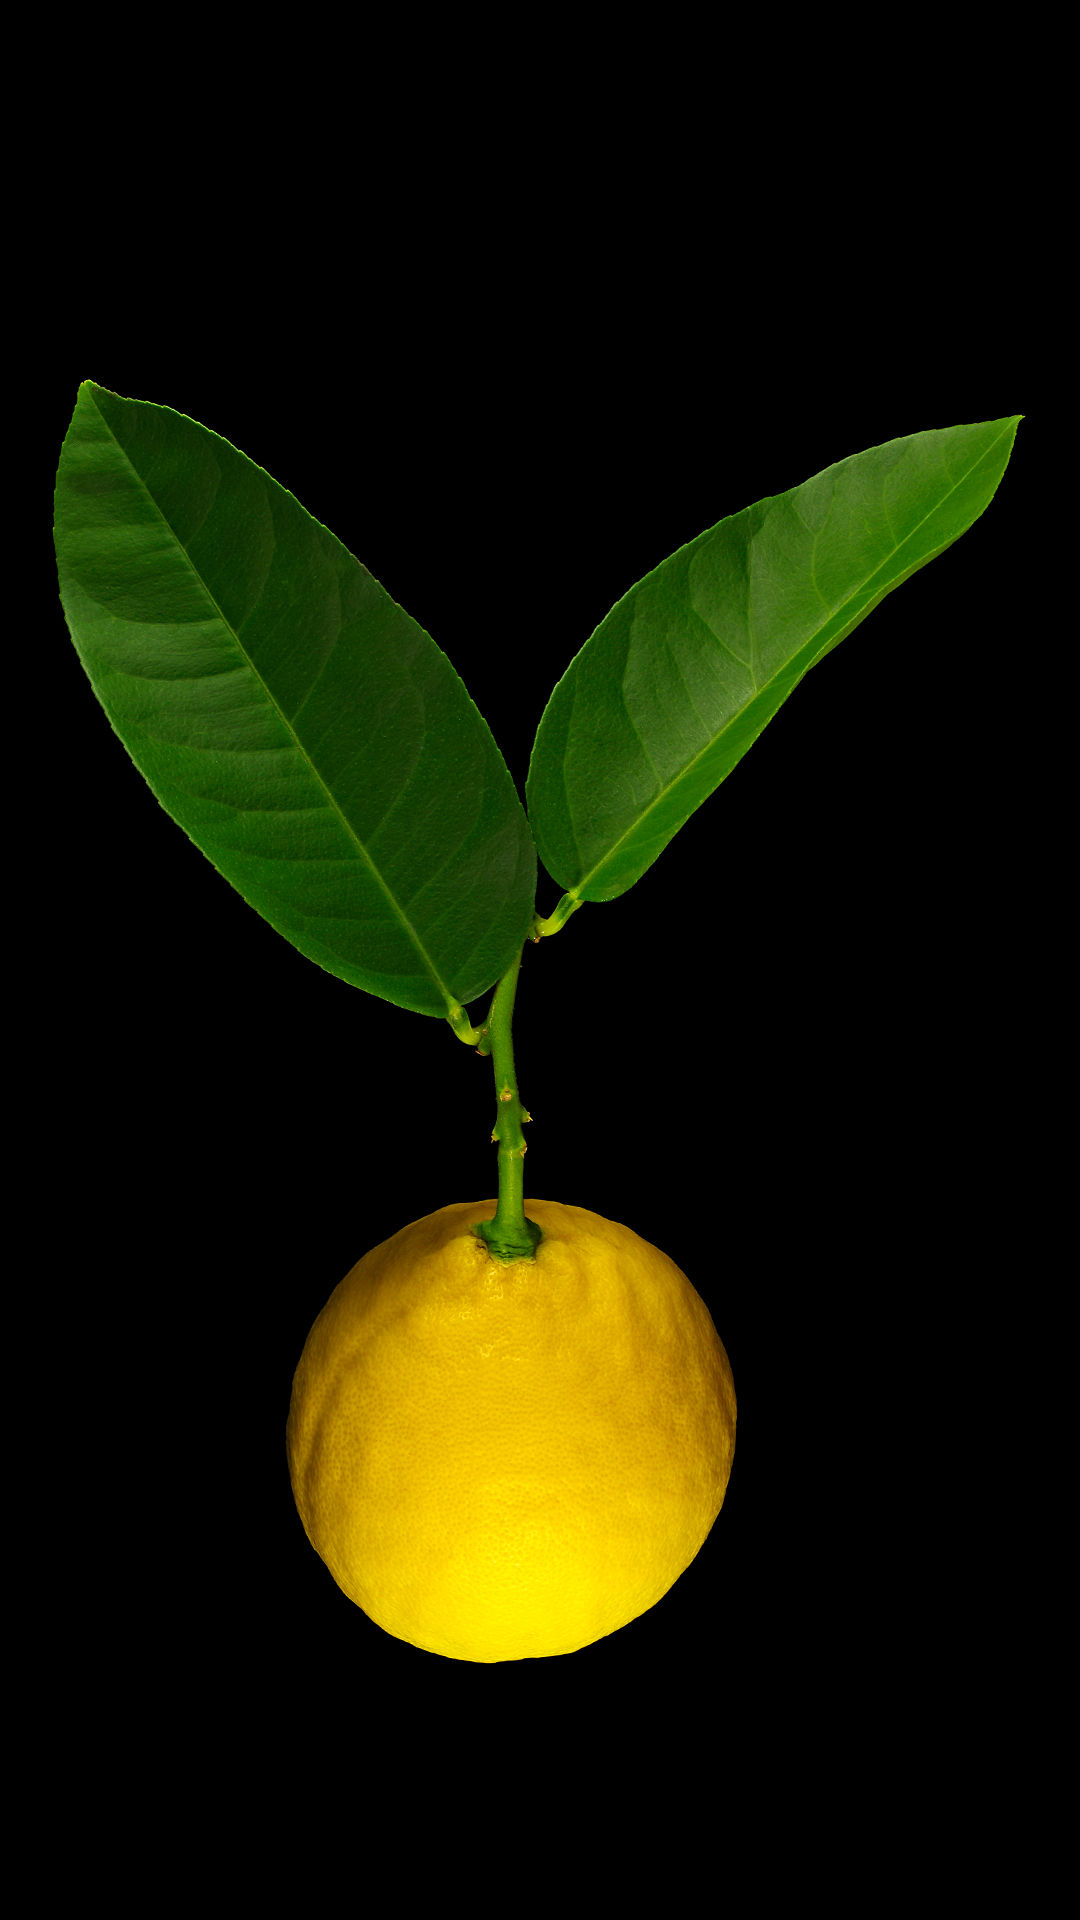 Lipo lemon: Citrus limon x Citrus paradisi ‚Lipo‘